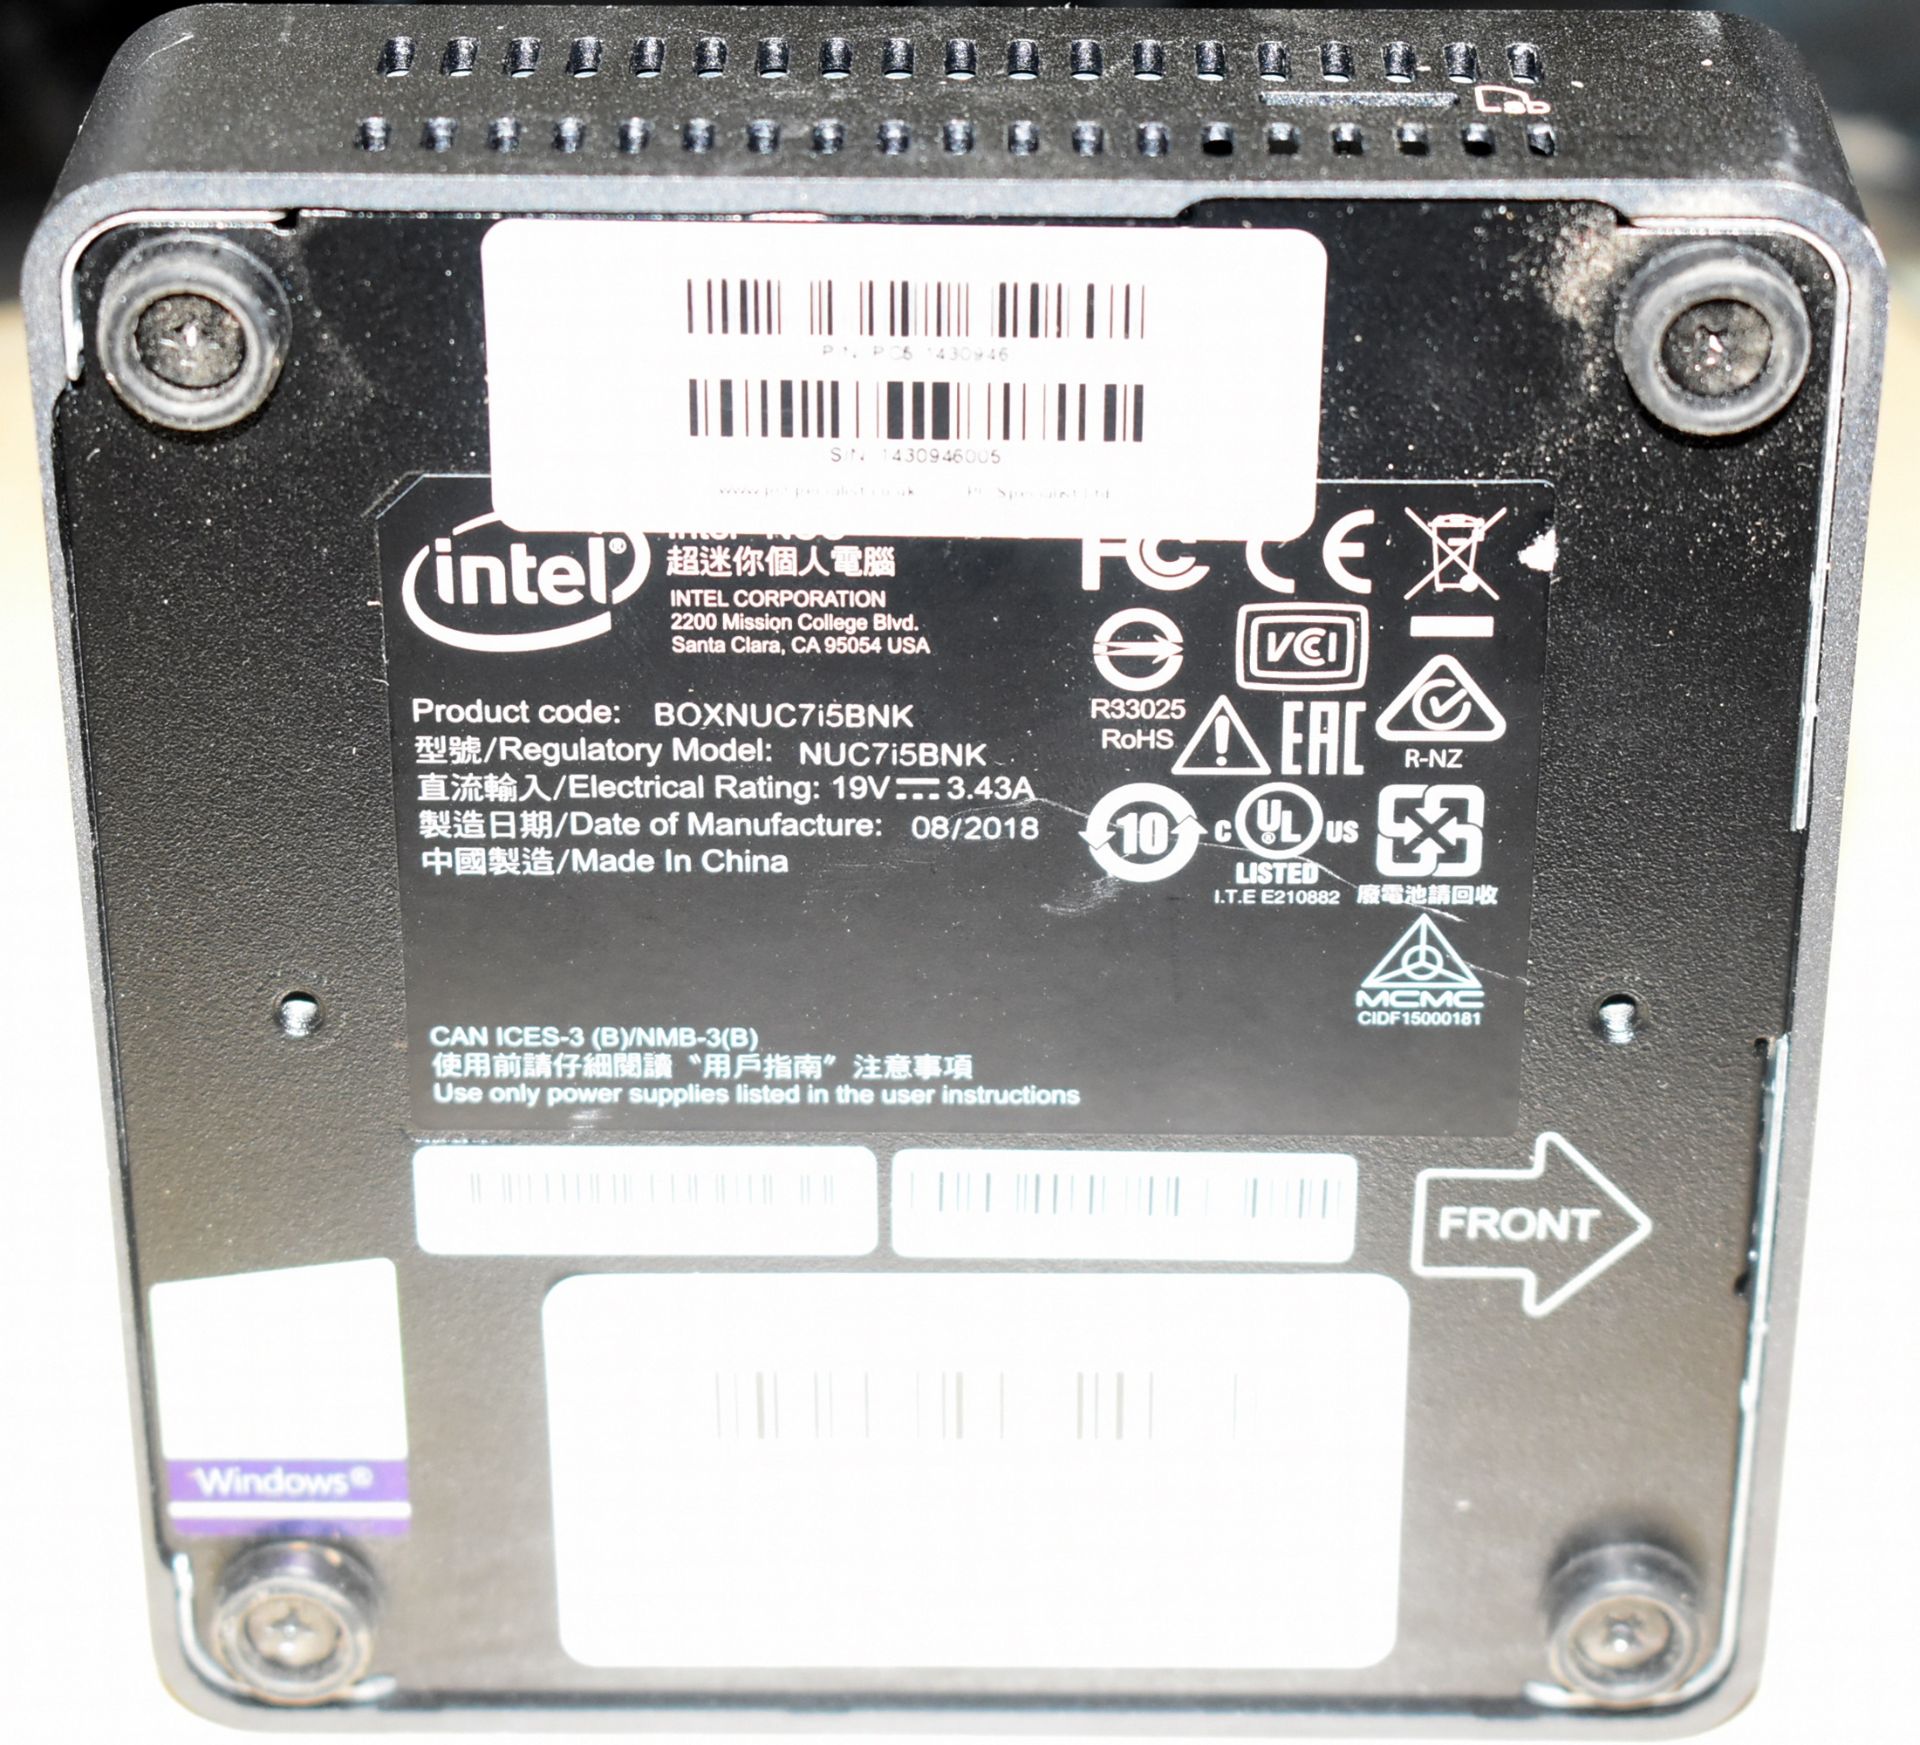 1 x Intel NUC Mini PC Featuring Intel i5-7260u 3.4Ghz Processor, 8GB DDR4 2133Mhz Ram, Intel Iris - Image 4 of 6